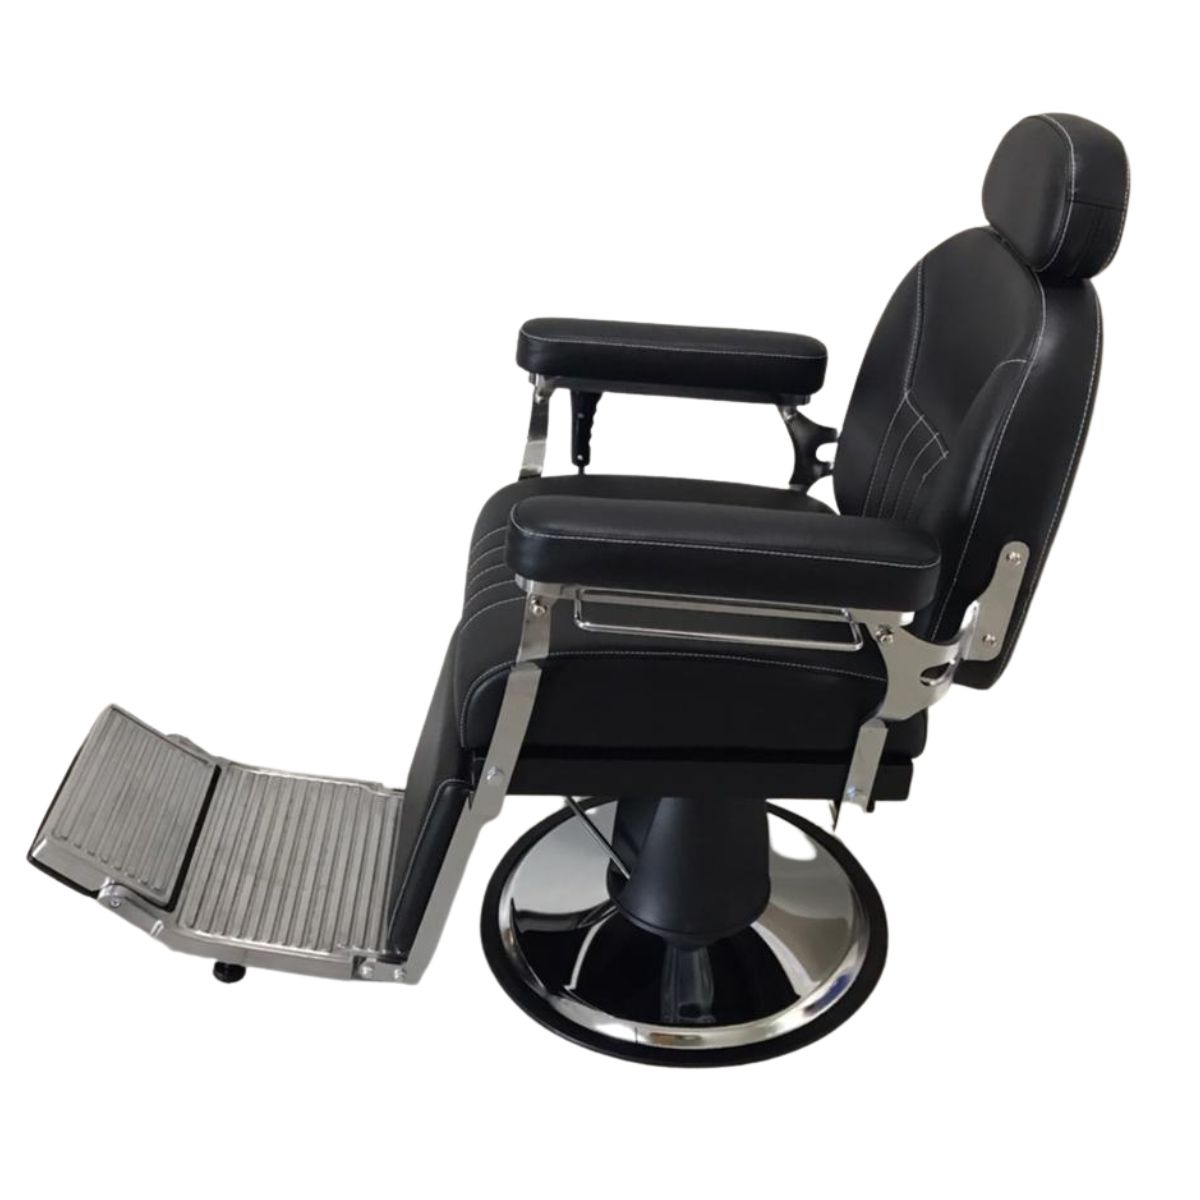 Cadeira Barbeiro Reclinável Base Redonda Preto IWCBRBR003